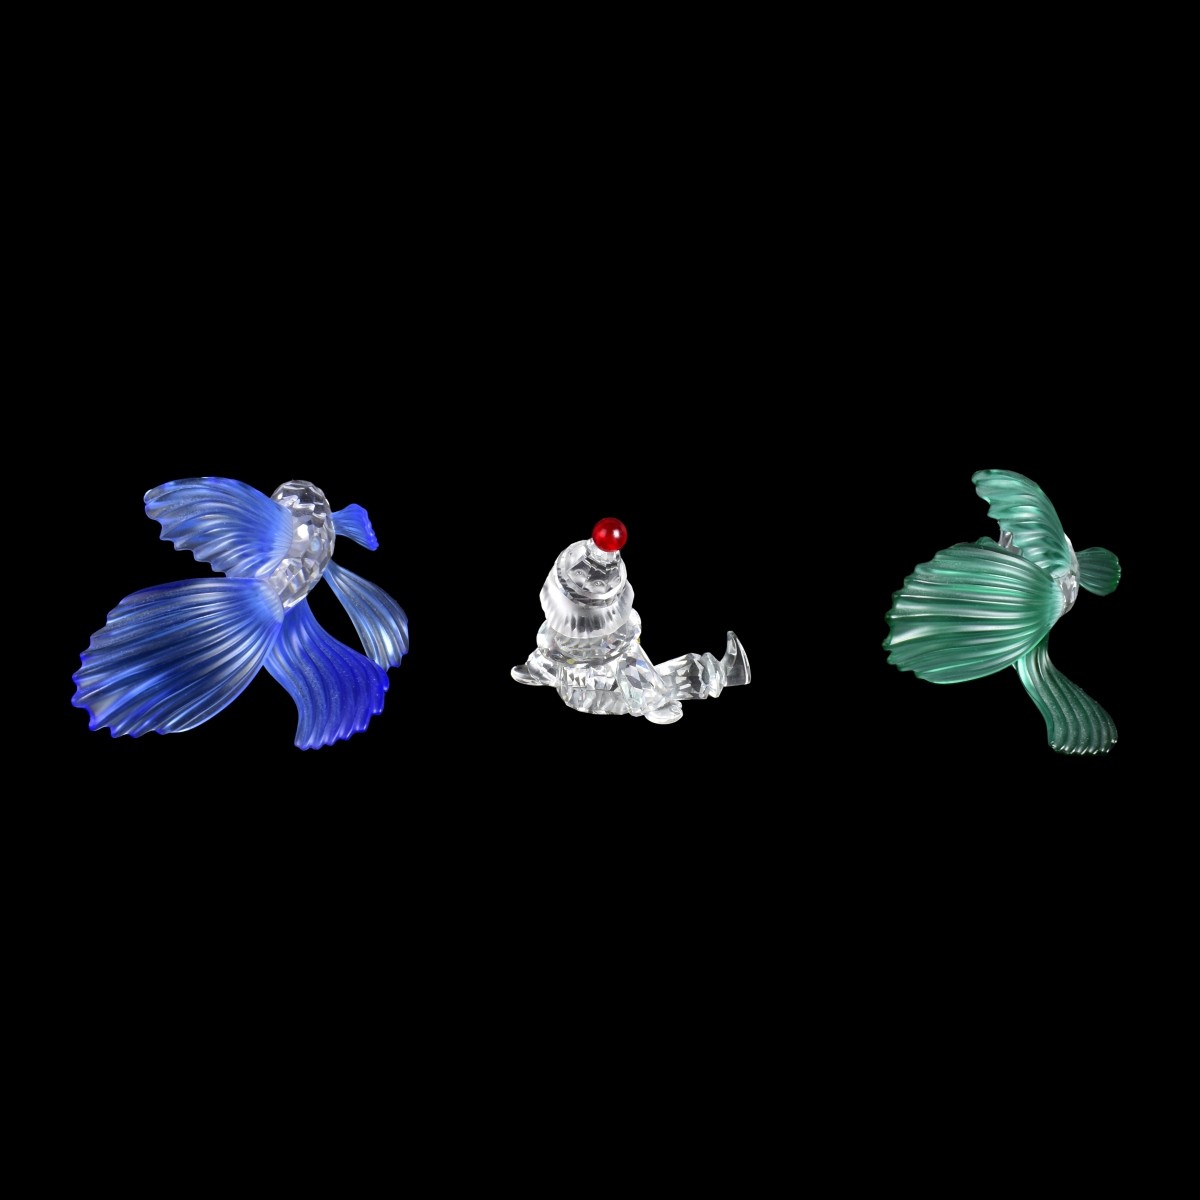 Three Swarovski Crystal Figurines